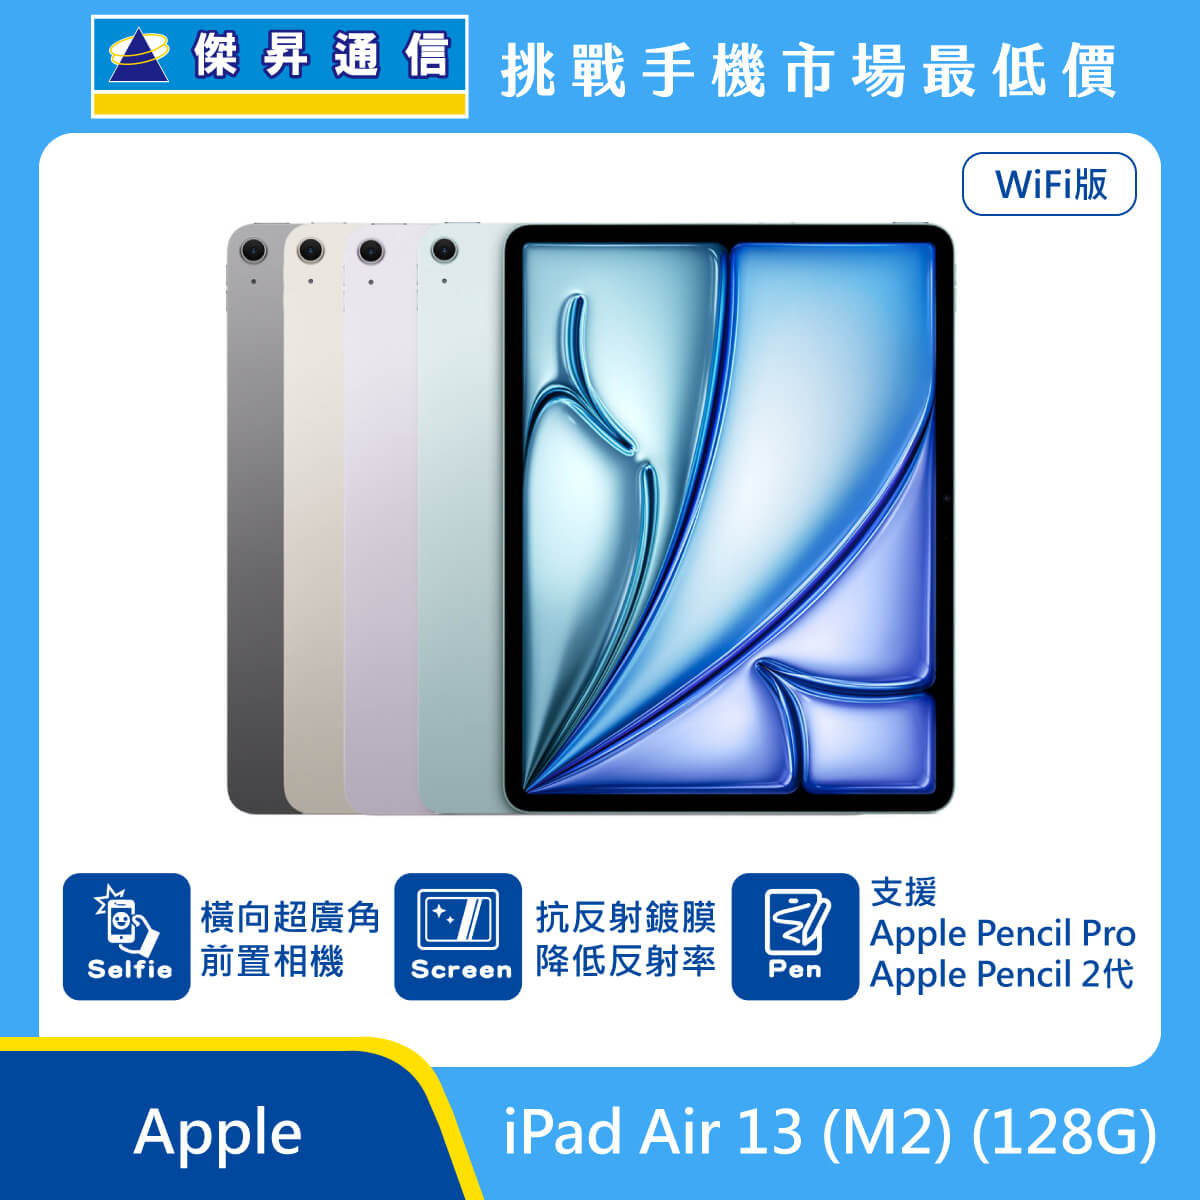 Apple 平板 iPad Air 13 M2 Wi-Fi (128G) 即將上市